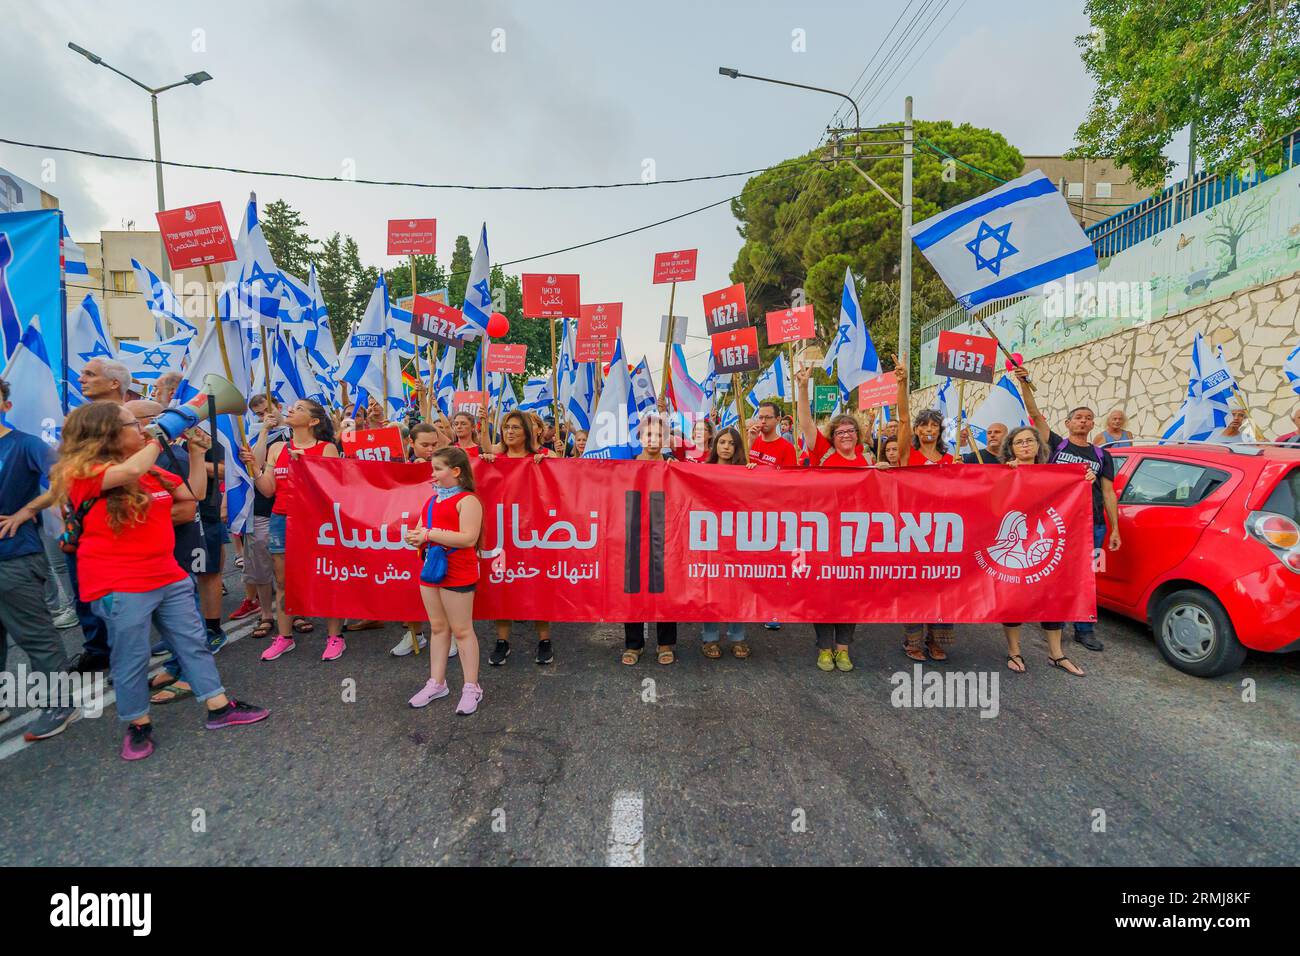 Haïfa, Israël - 26 août 2023 : les gens défilent avec une bannière pour les droits des femmes. Semaine 34 de protestation contre la révision judiciaire controversée. Haïfa, Israël Banque D'Images